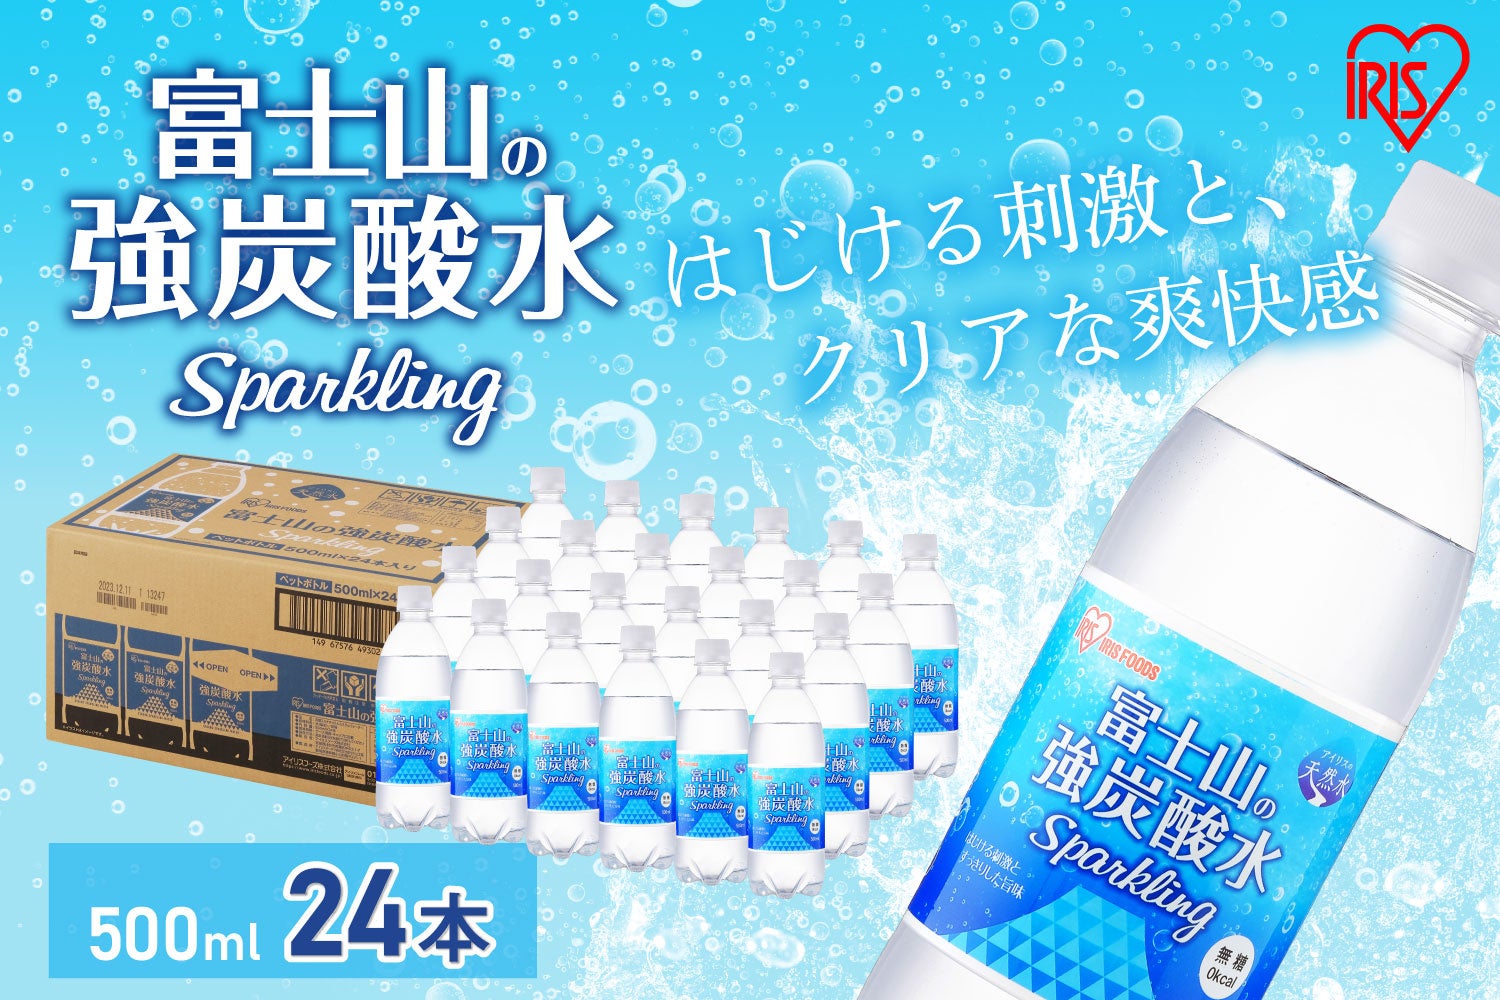 防災意識の高まりで需要が拡大している「飲料水」を裾野市の新規返礼品に登録。富士山の恵みを受けた『富士山の強炭酸水』